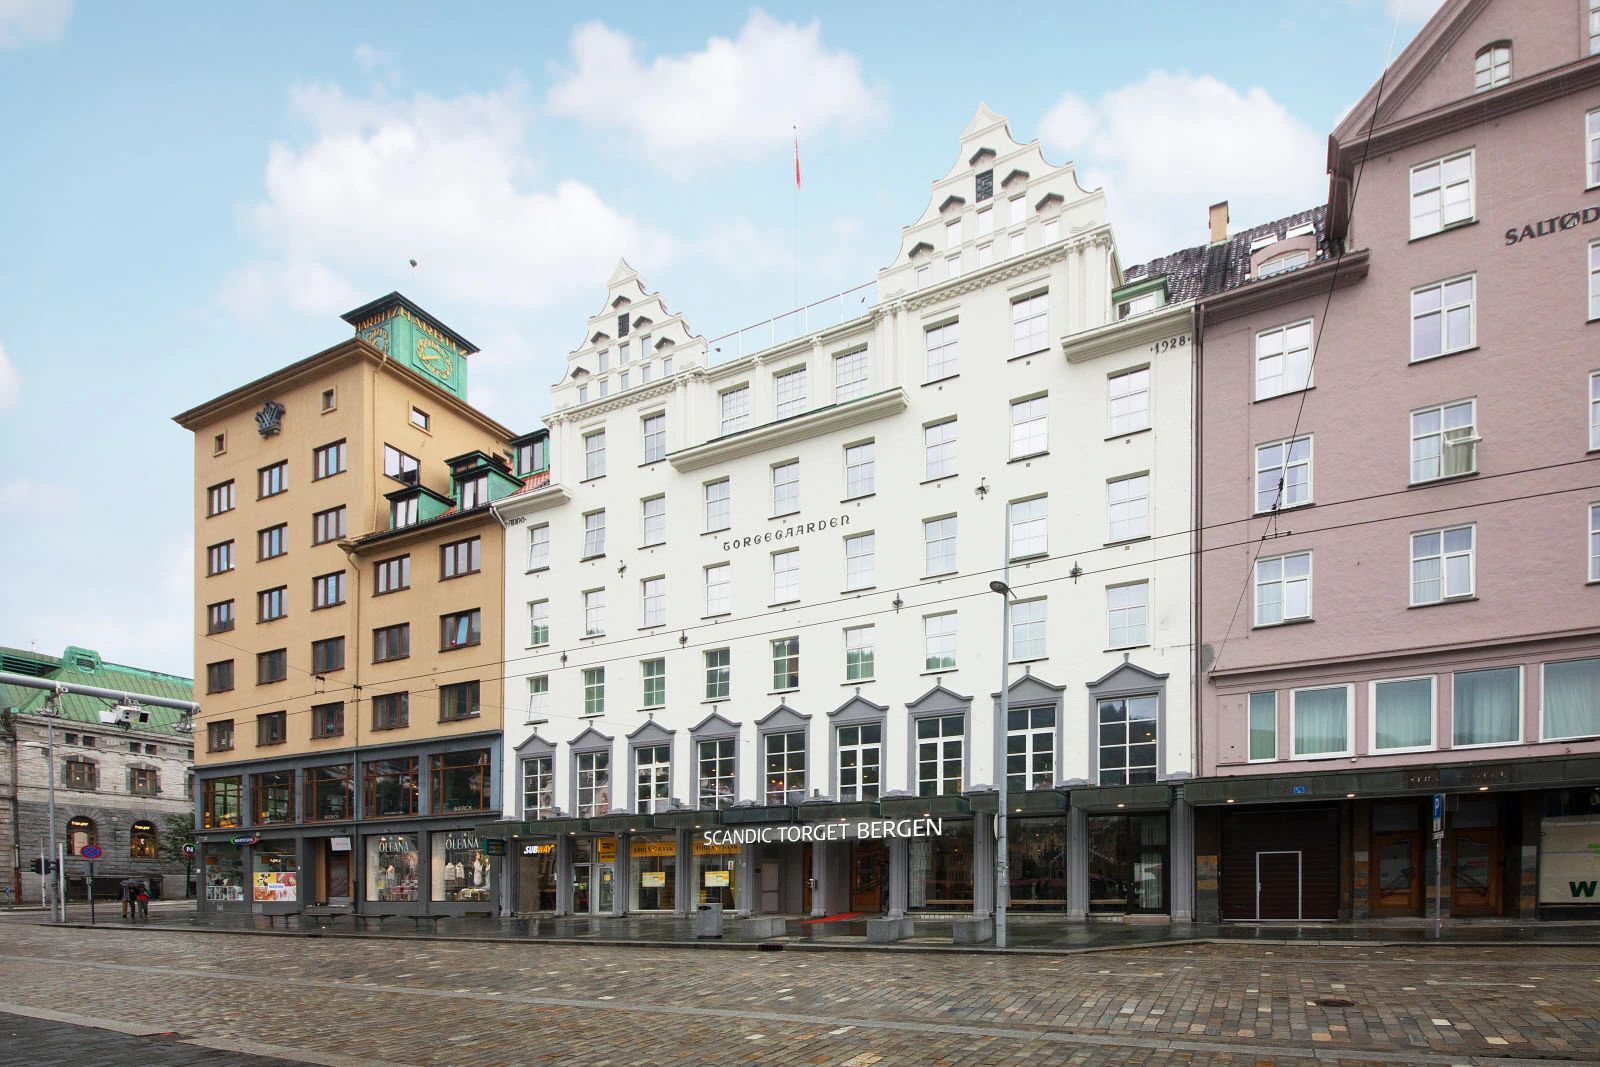 Scandic Torget Hotel, Bergen